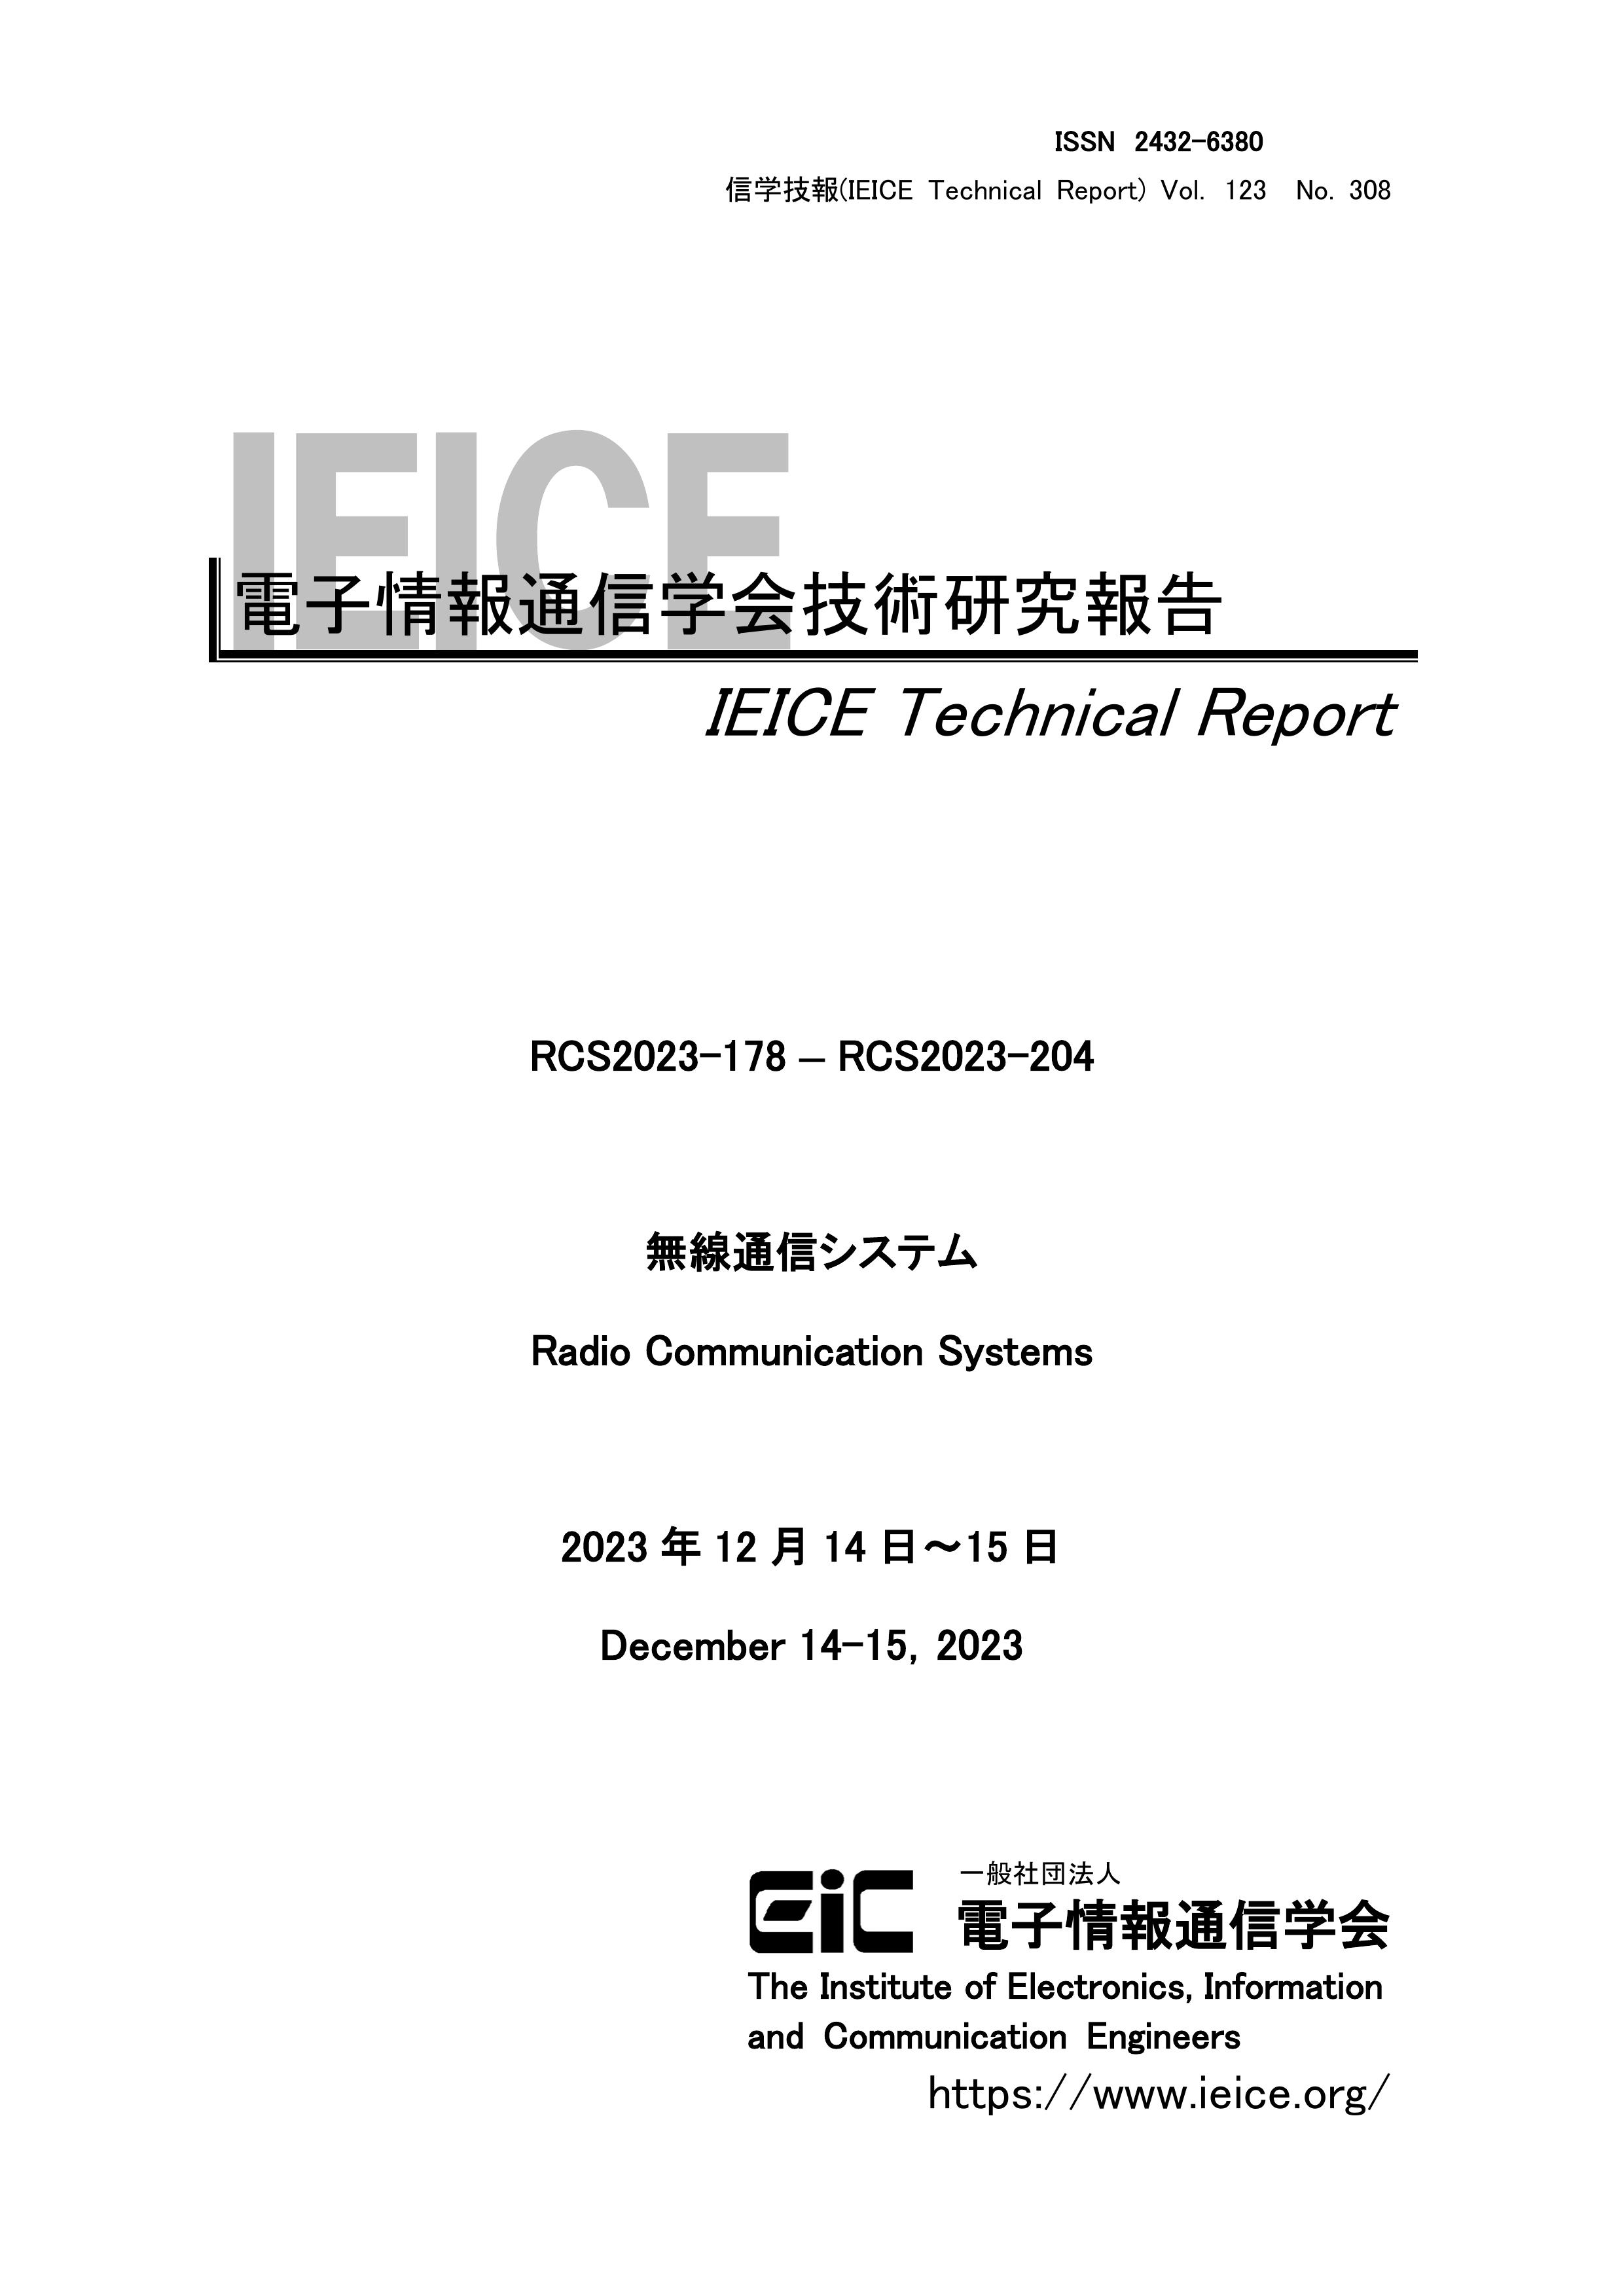 電子情報通信学会技術研究報告, vol 123, no 308, 2023